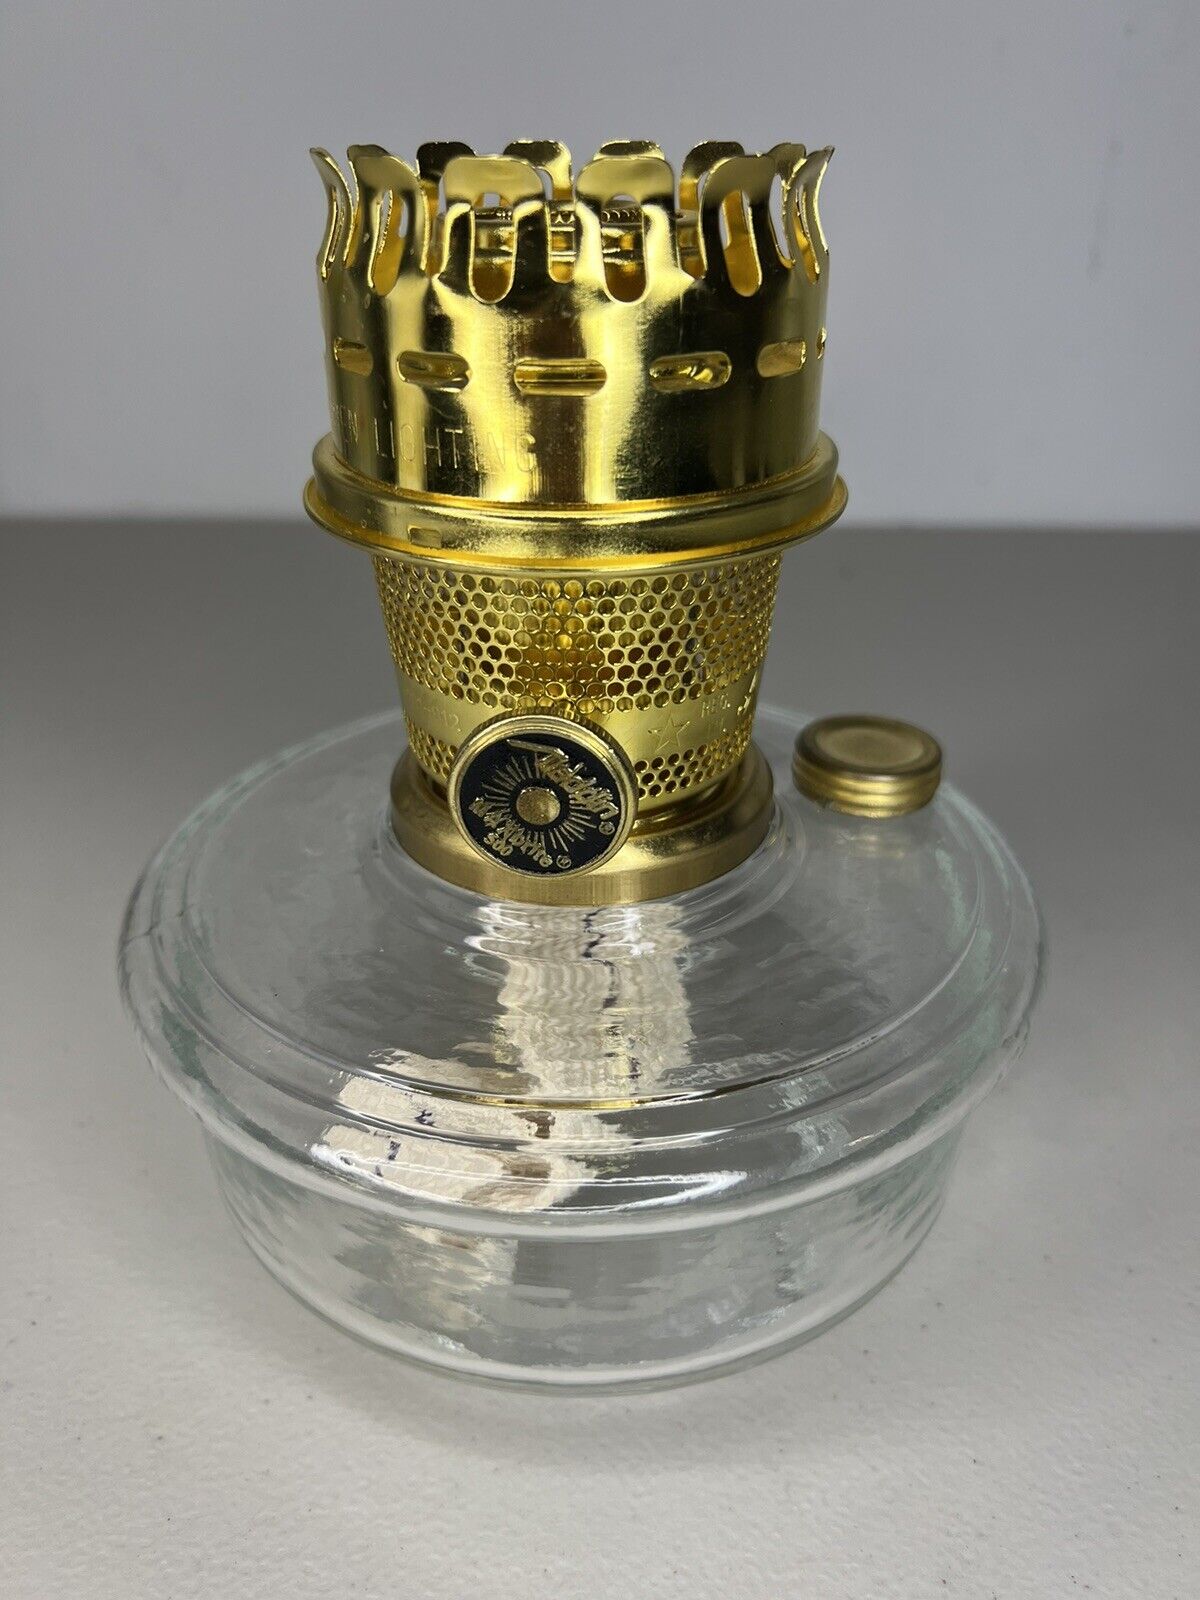 Aladdin Brand Brass MaxBrite Burner Kerosene Oil Lamp Improved Model Glass New